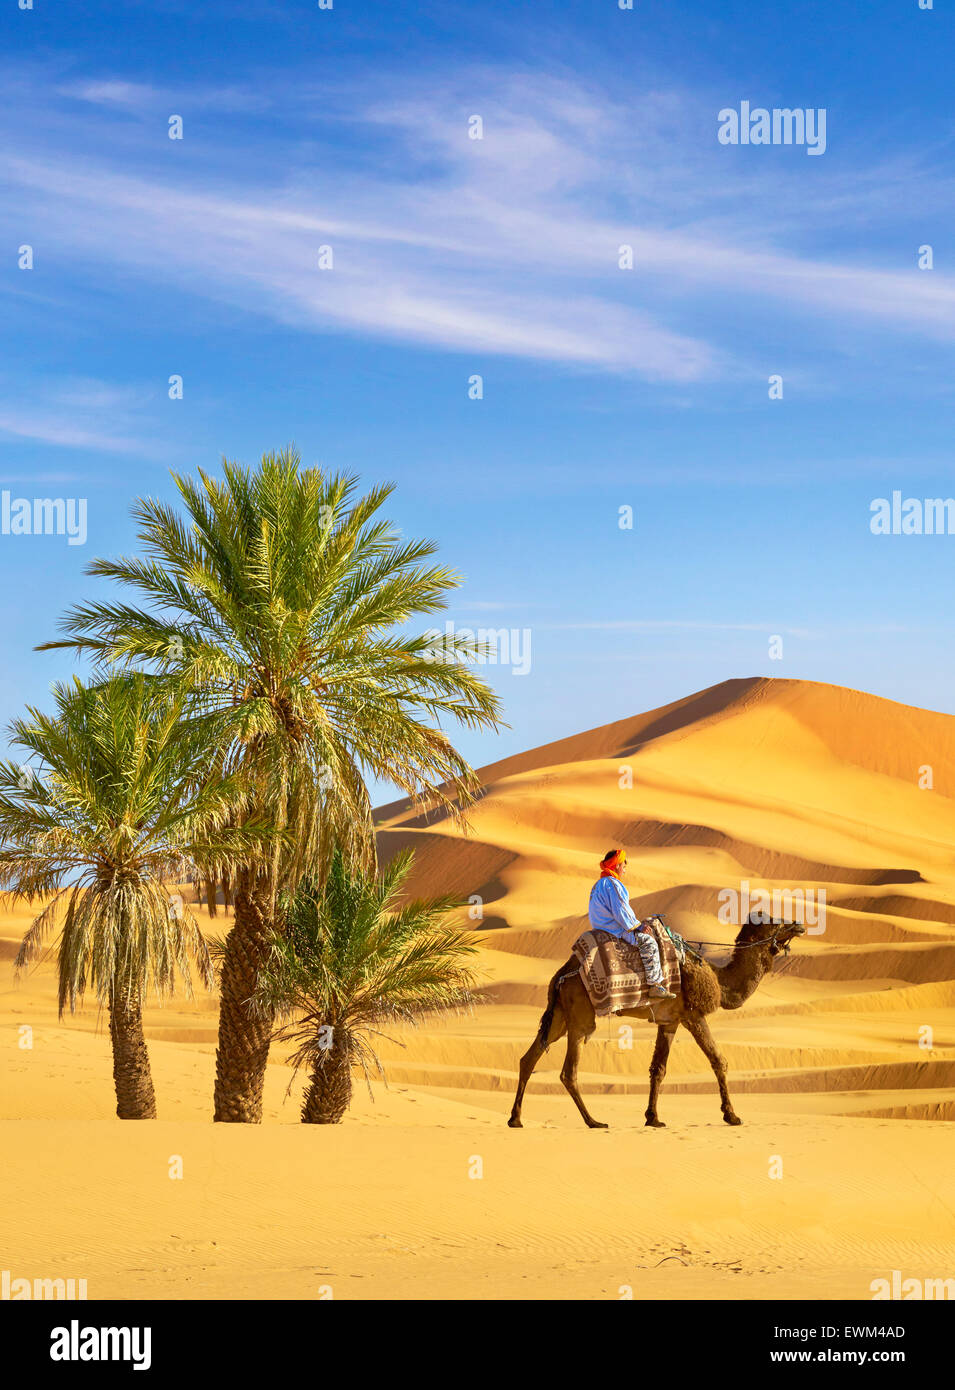 Homme berbère monter sur le chameau, le désert de l'Erg Chebbi près de Merzouga, Sahara, Maroc Banque D'Images